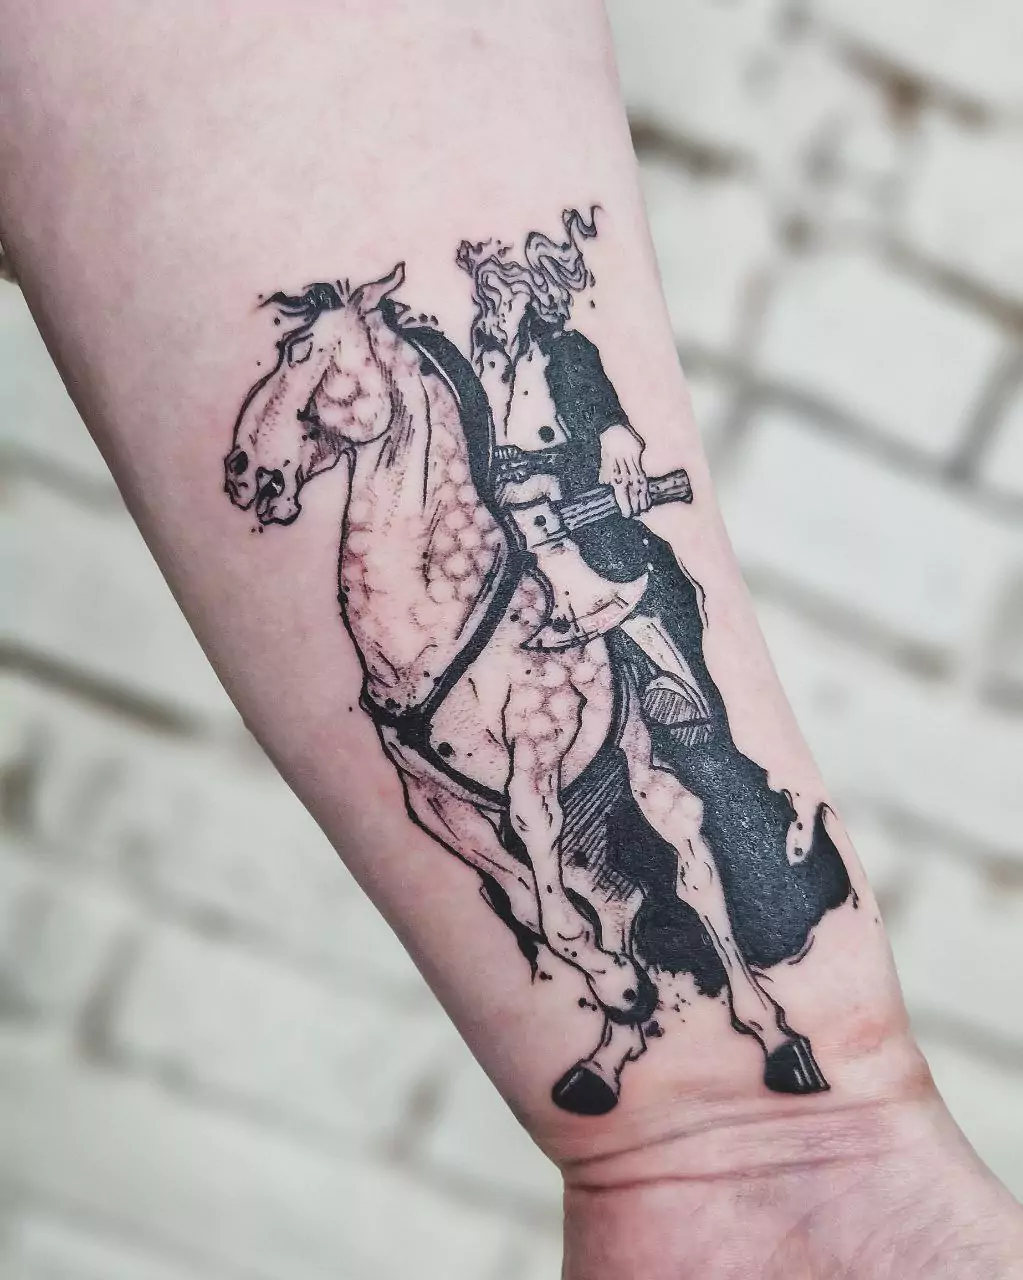 headless rider tattoo